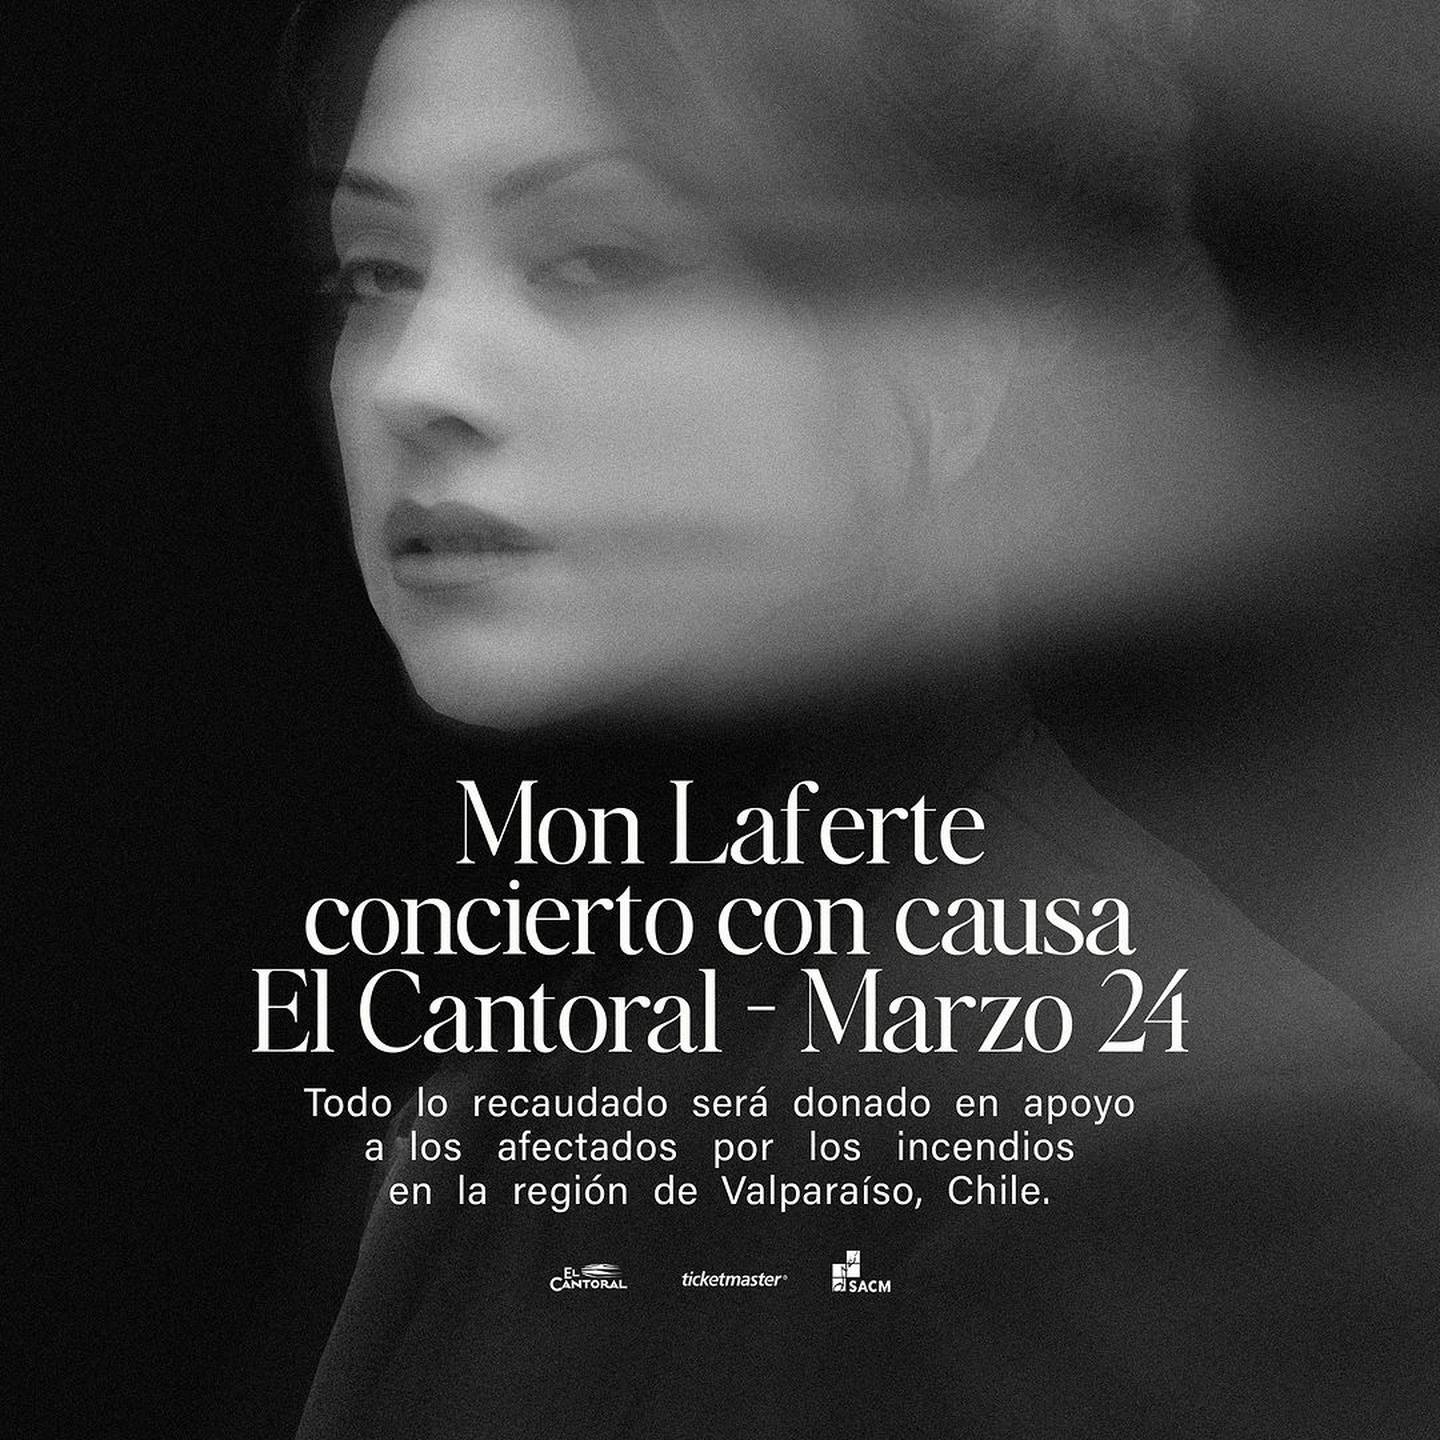 Mon Laferte hará un concierto acústico para recaudar fondos para la Región de Valparaíso.